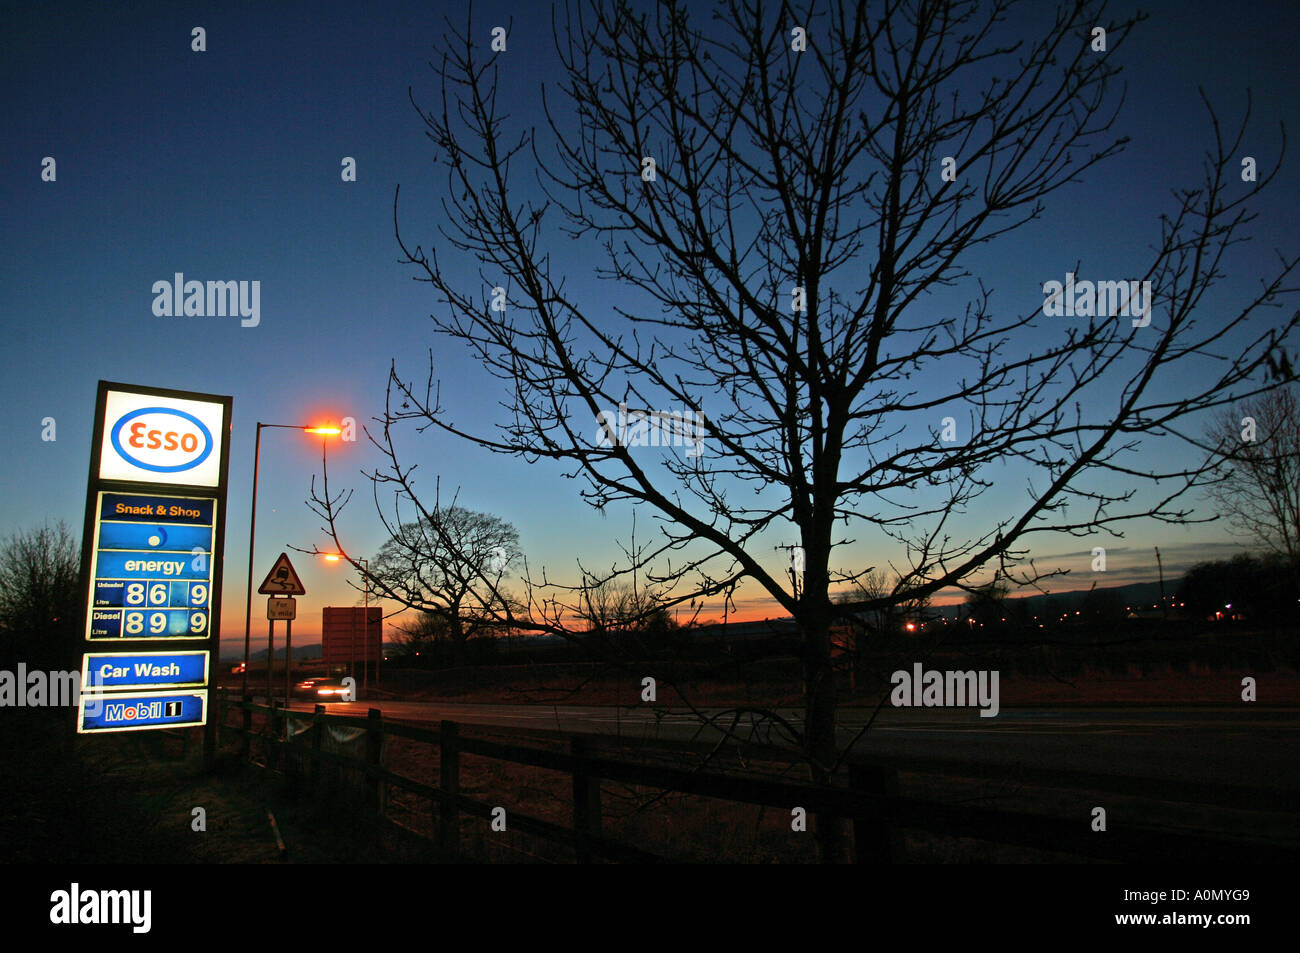 Esso Tankstelle Schild mit Benzin und Diesel Preise in der Abenddämmerung am Straßenrand Stockfoto